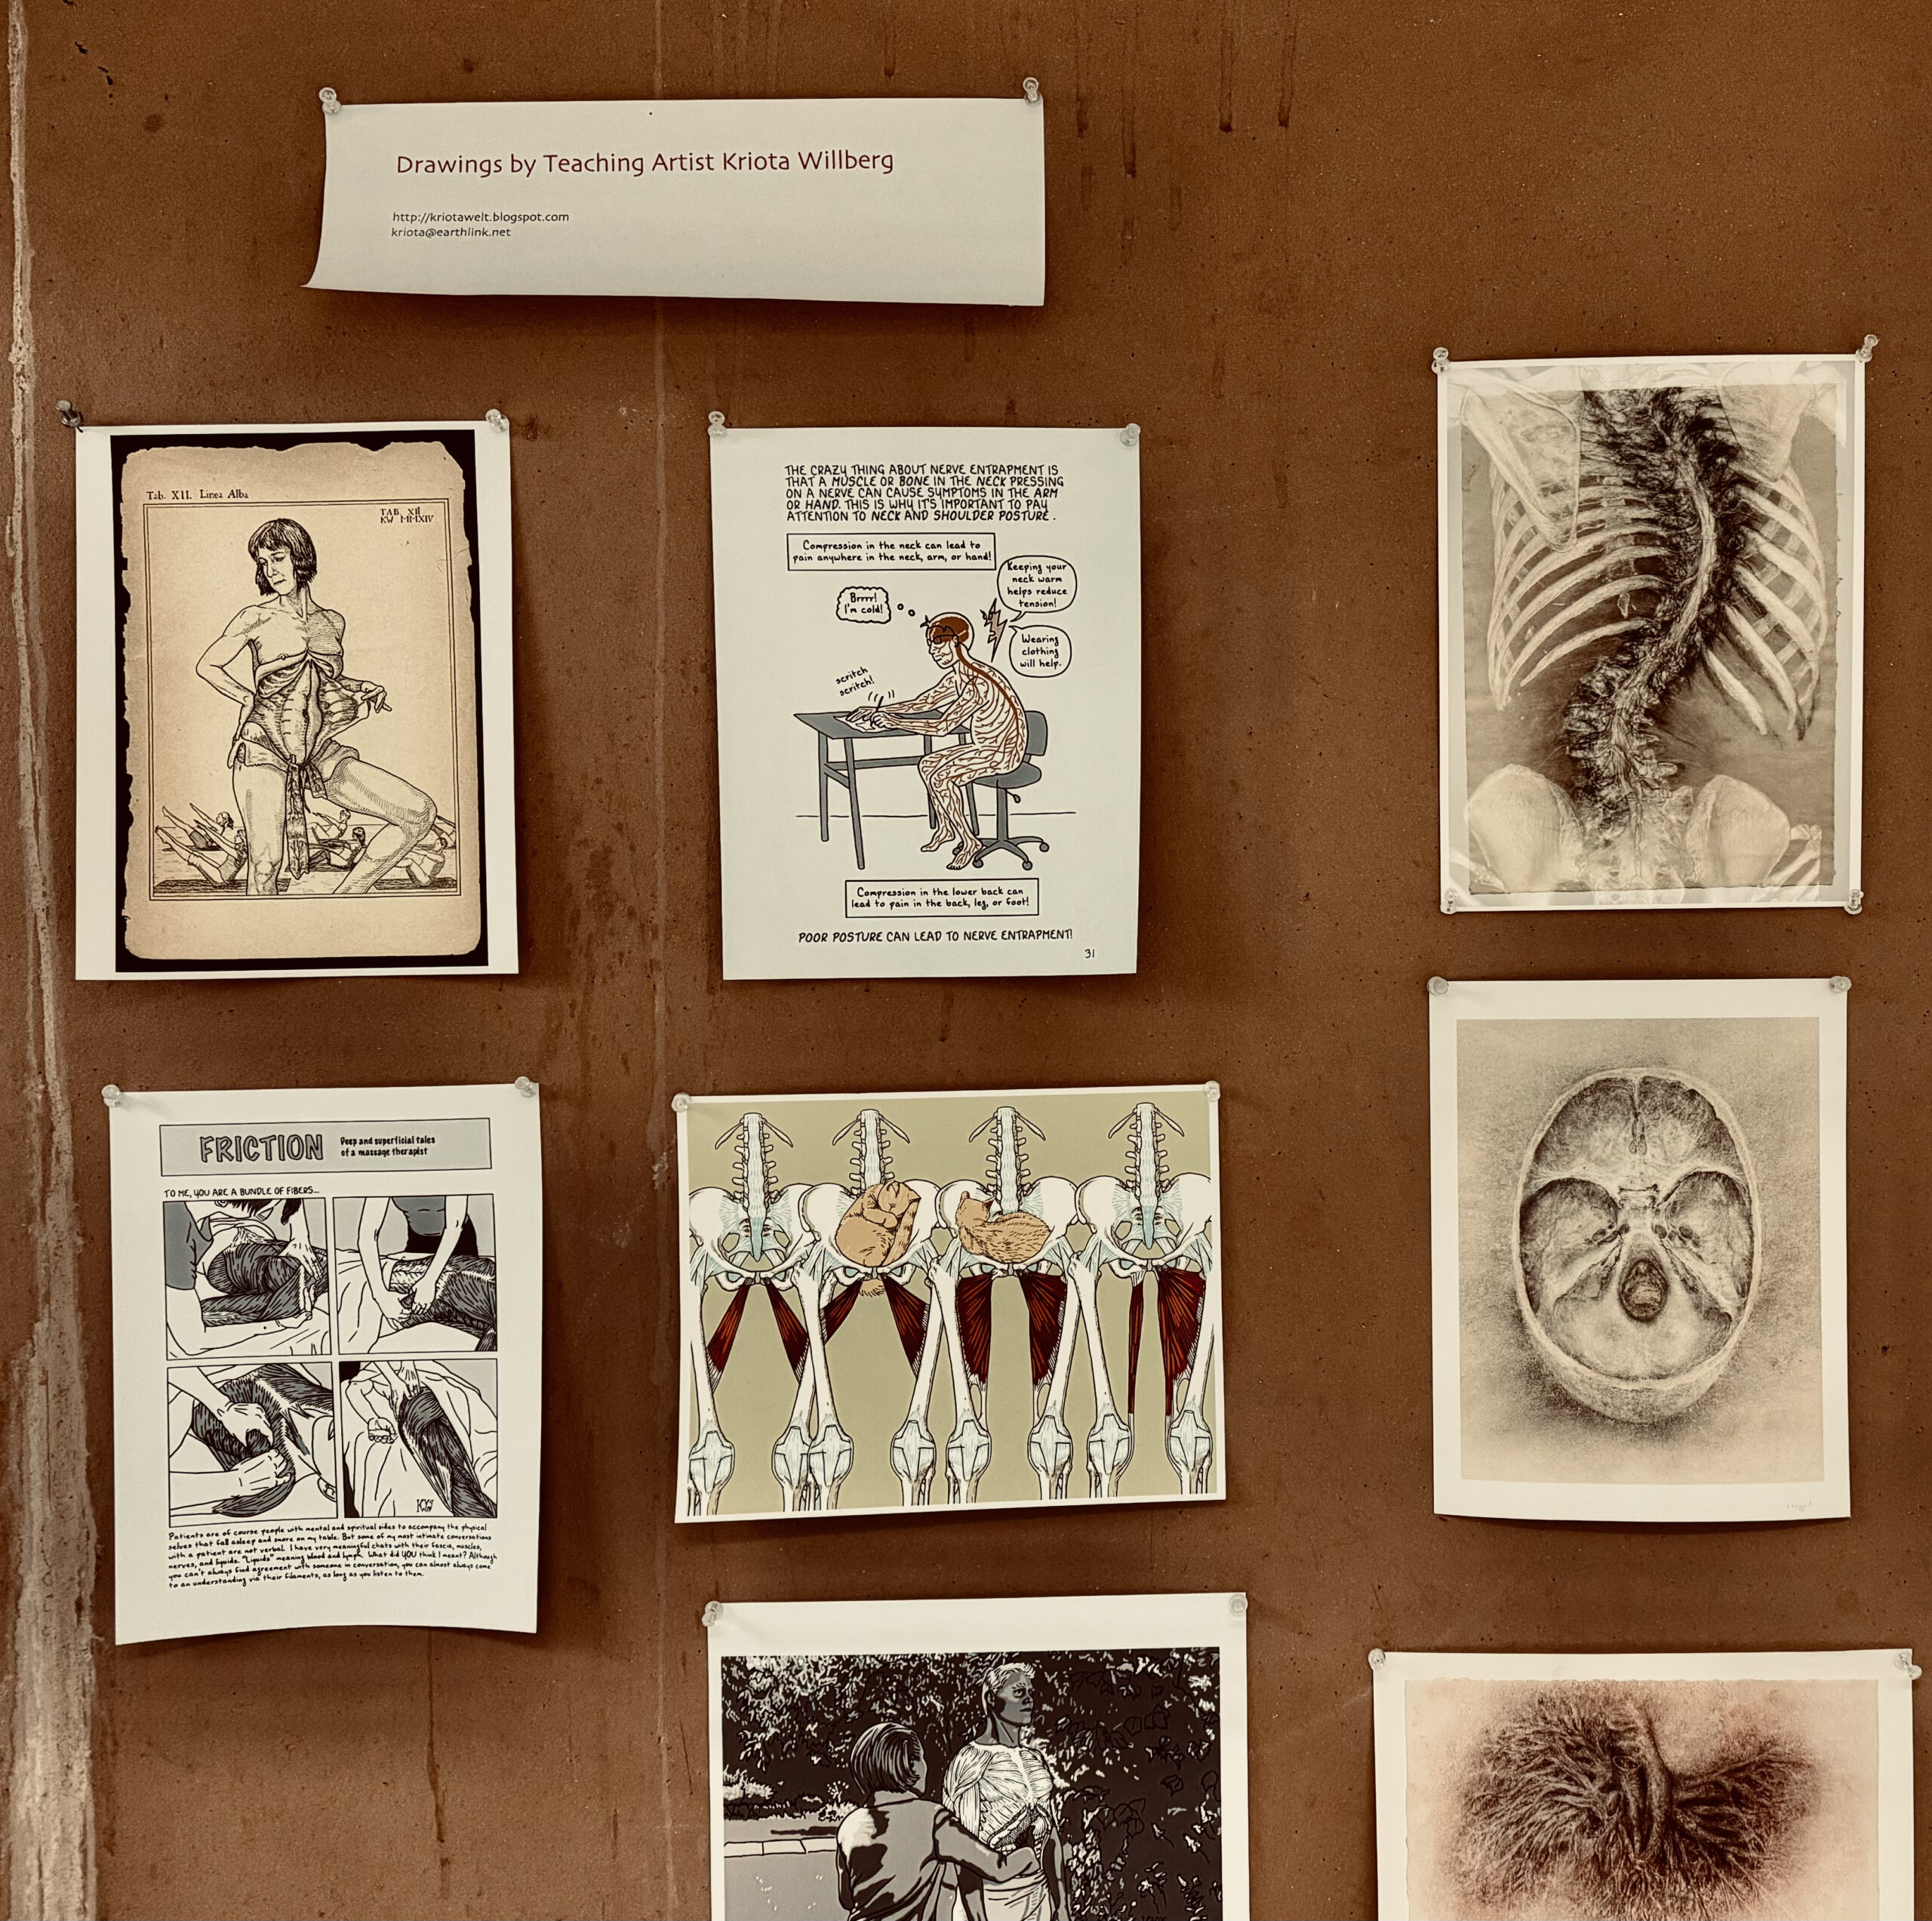 Drawings of human anatomy by teaching artist Kriota Willberg.